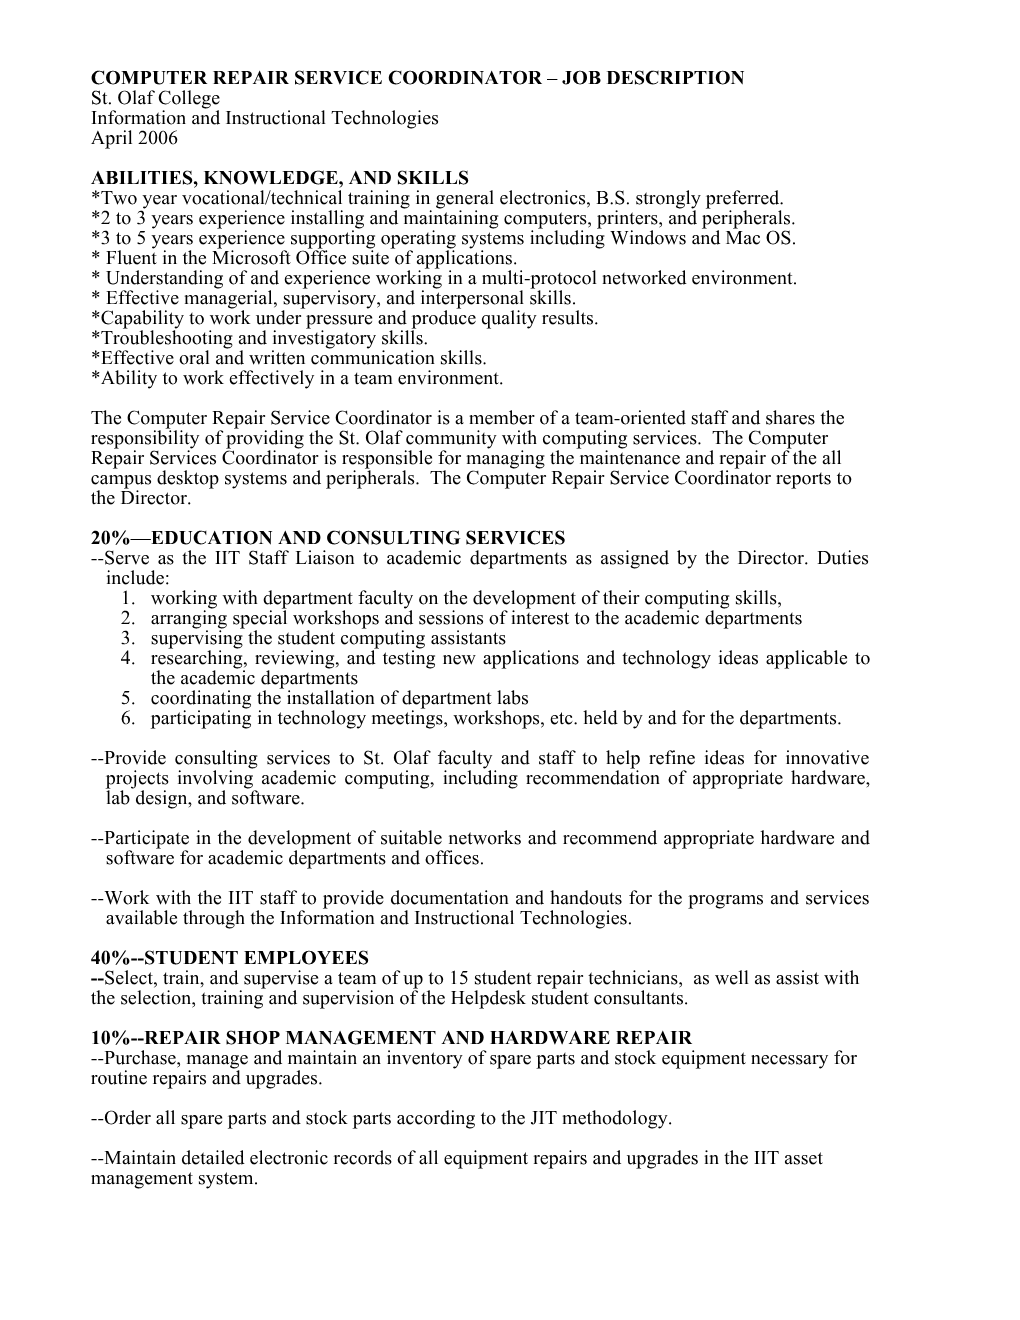 Computer Repair Service Coordinator- Job Description